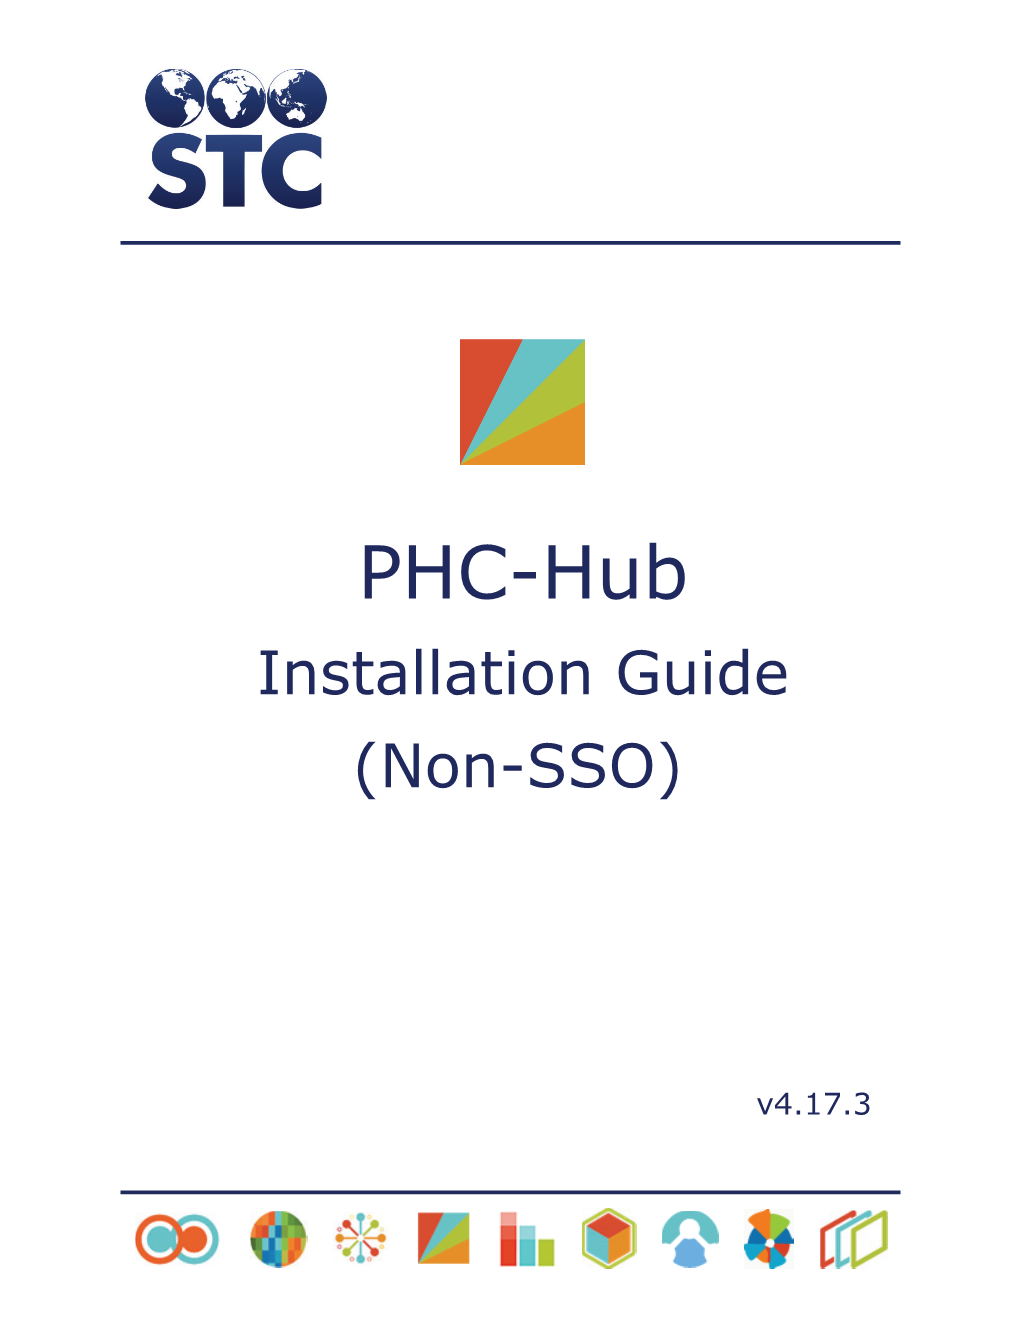 PHC-Hub 4.17.3 Non-SSO Installation Guide